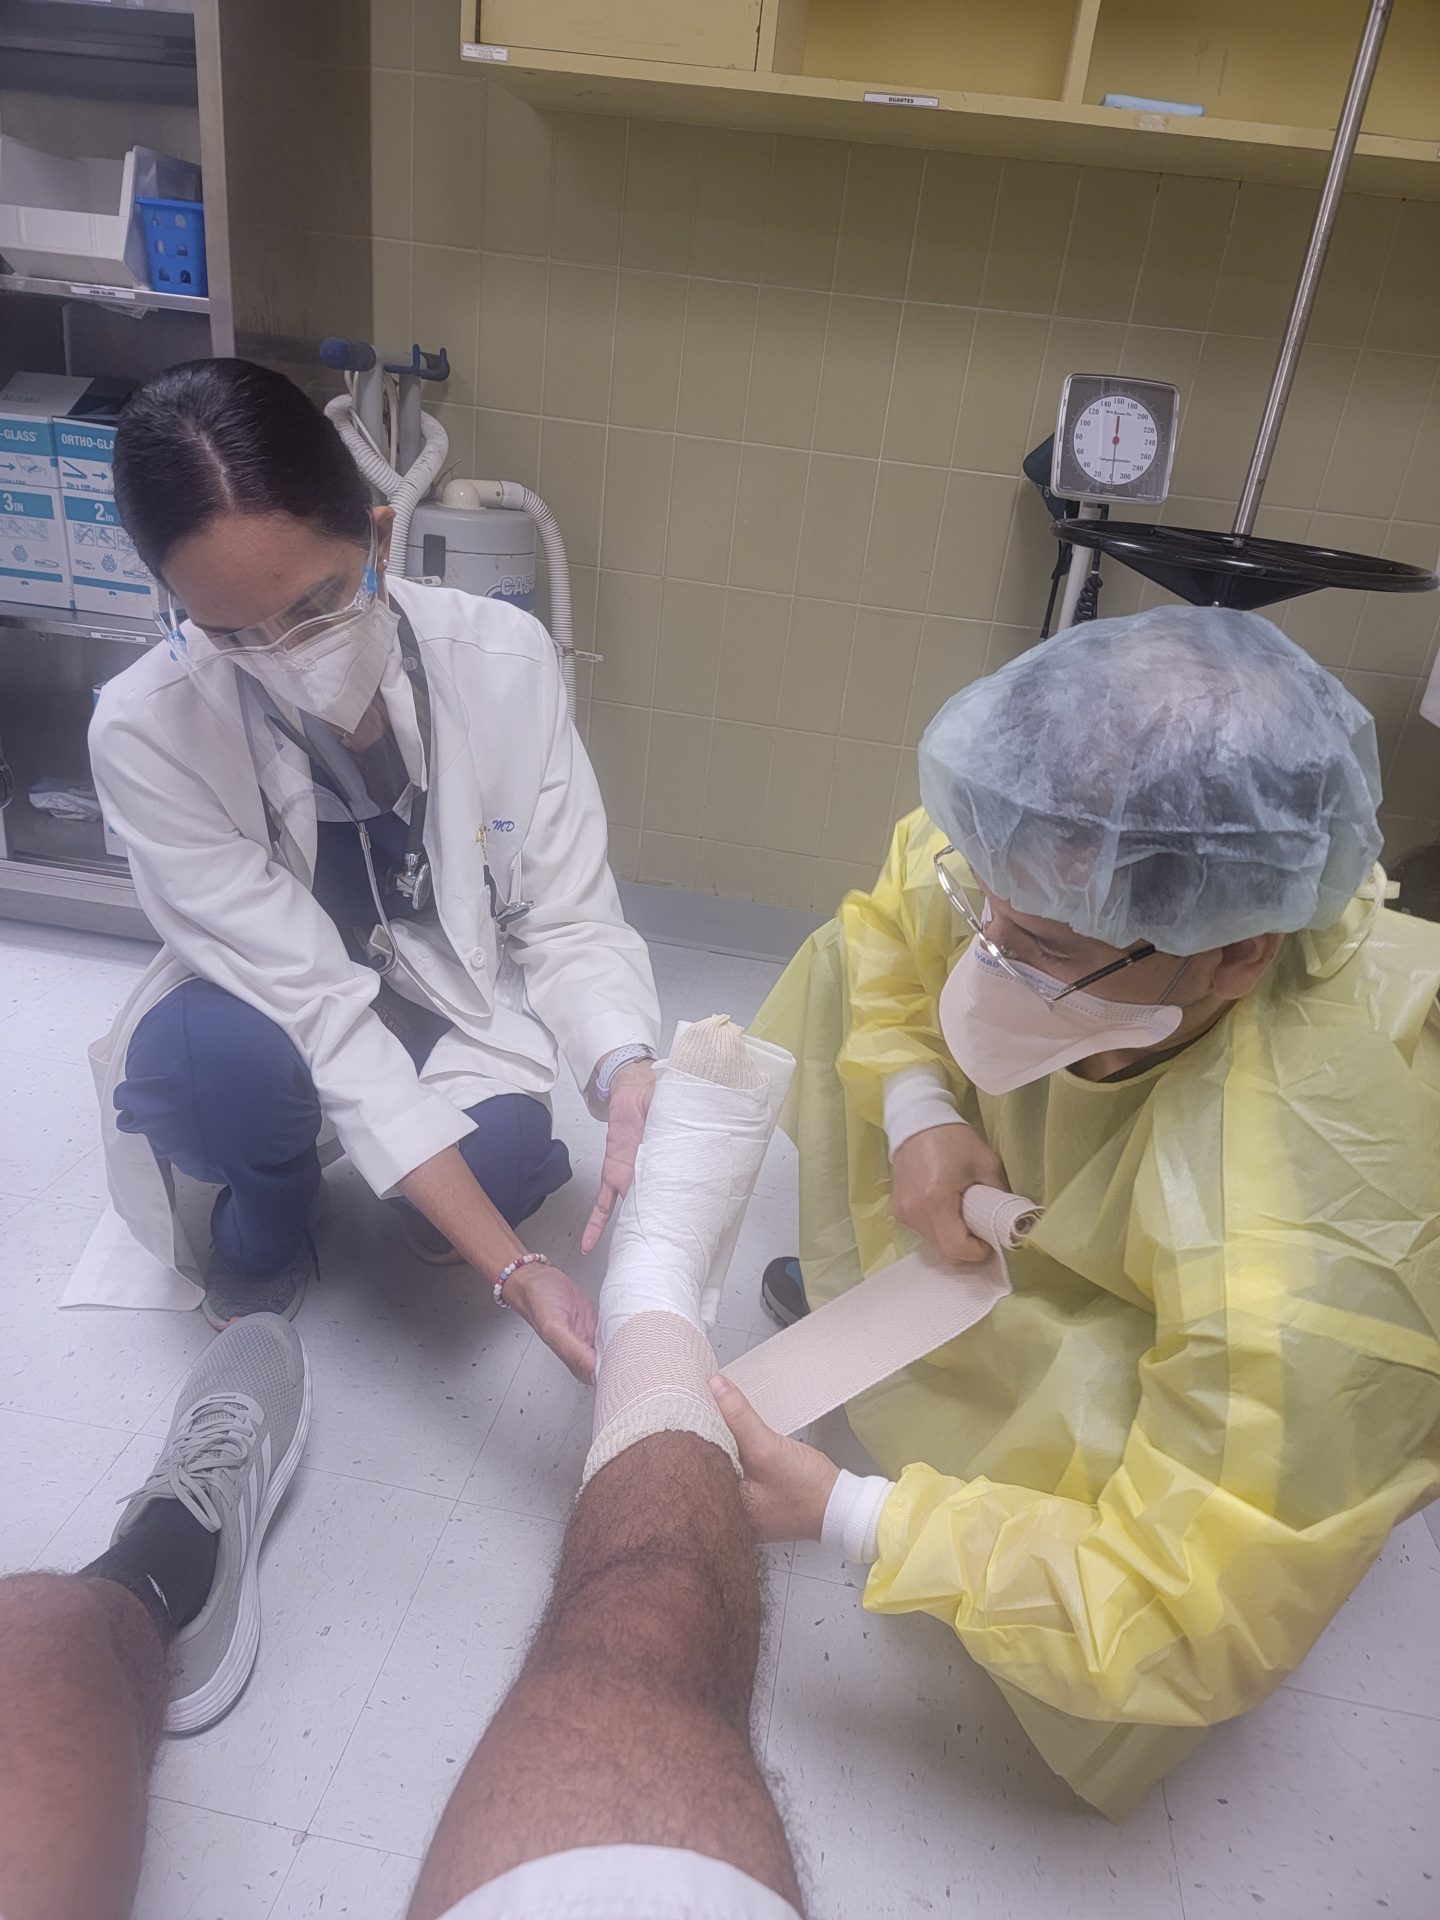 a doctor bandaging a patient's leg